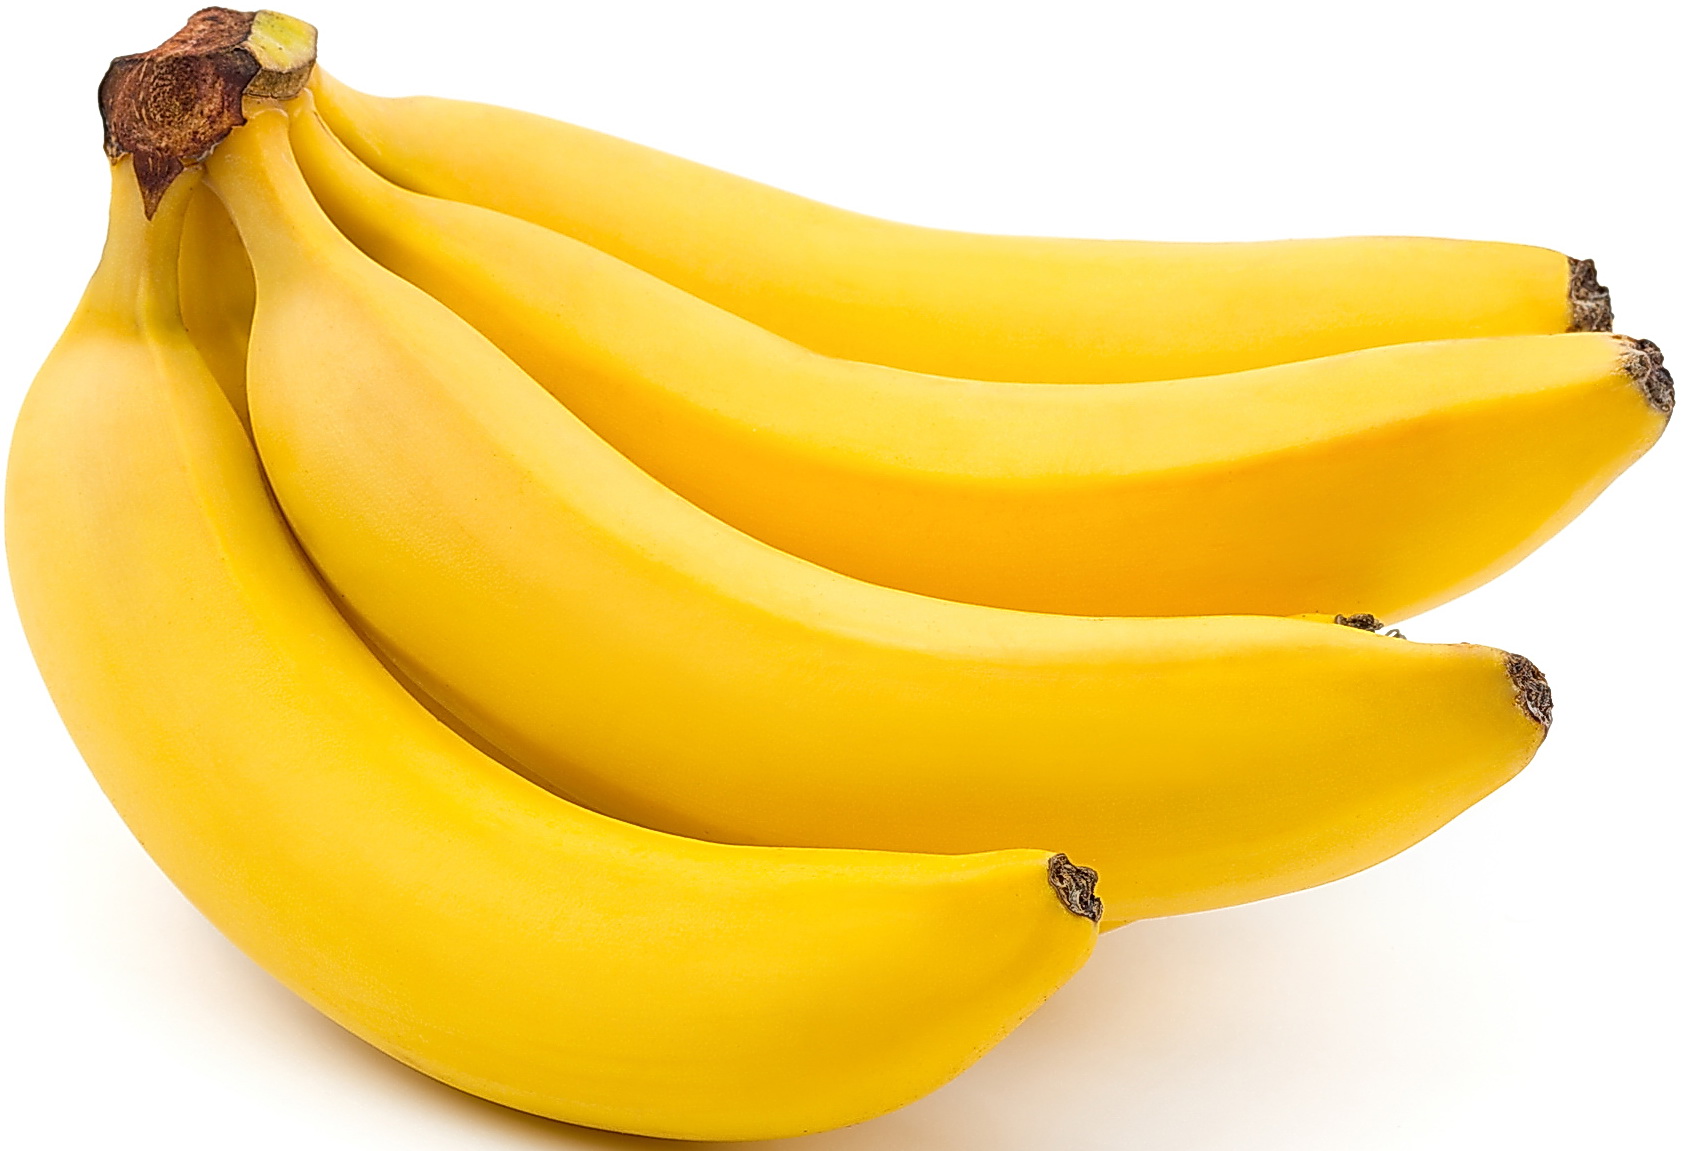 Результат пошуку зображень за запитом "Бананы"